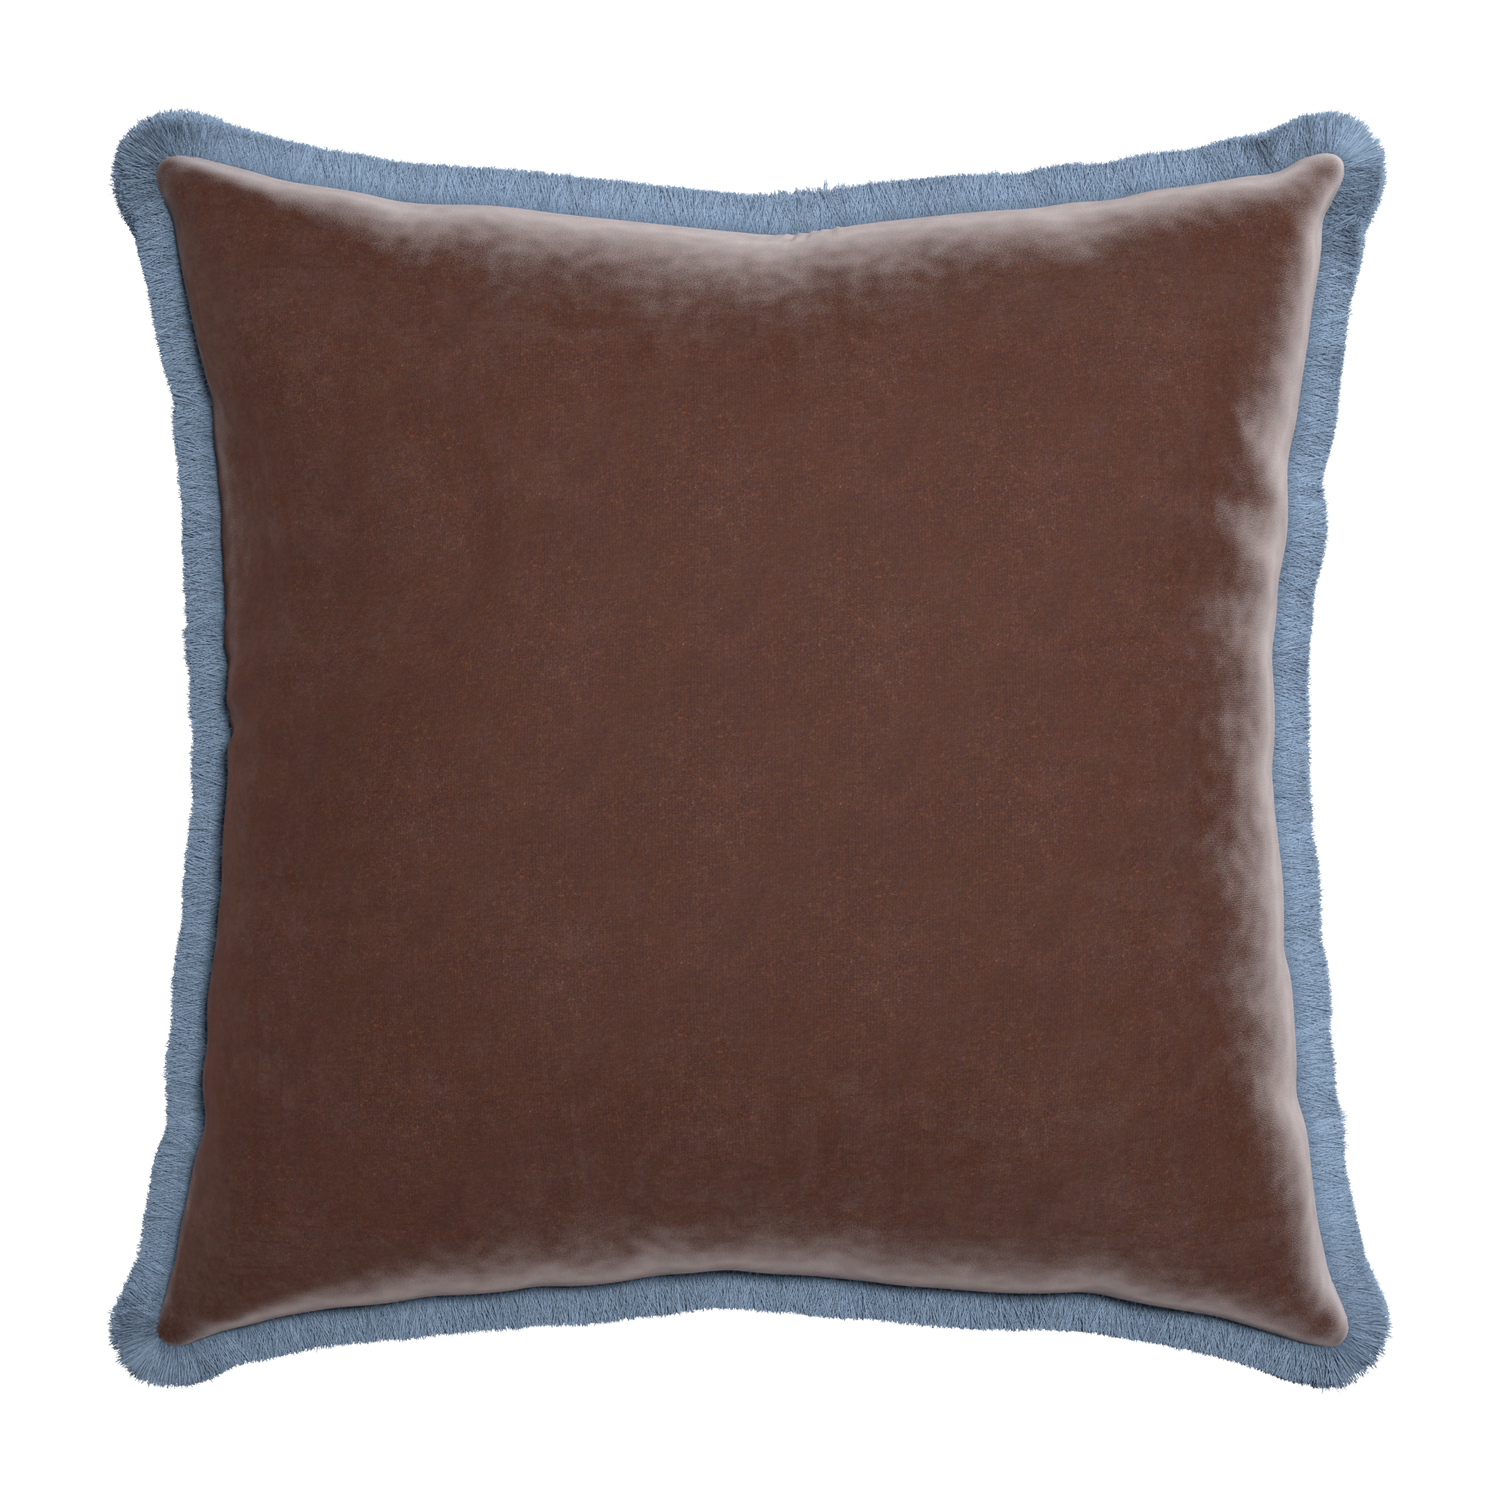 Euro-sham walnut velvet custom pillow with sky fringe on white background